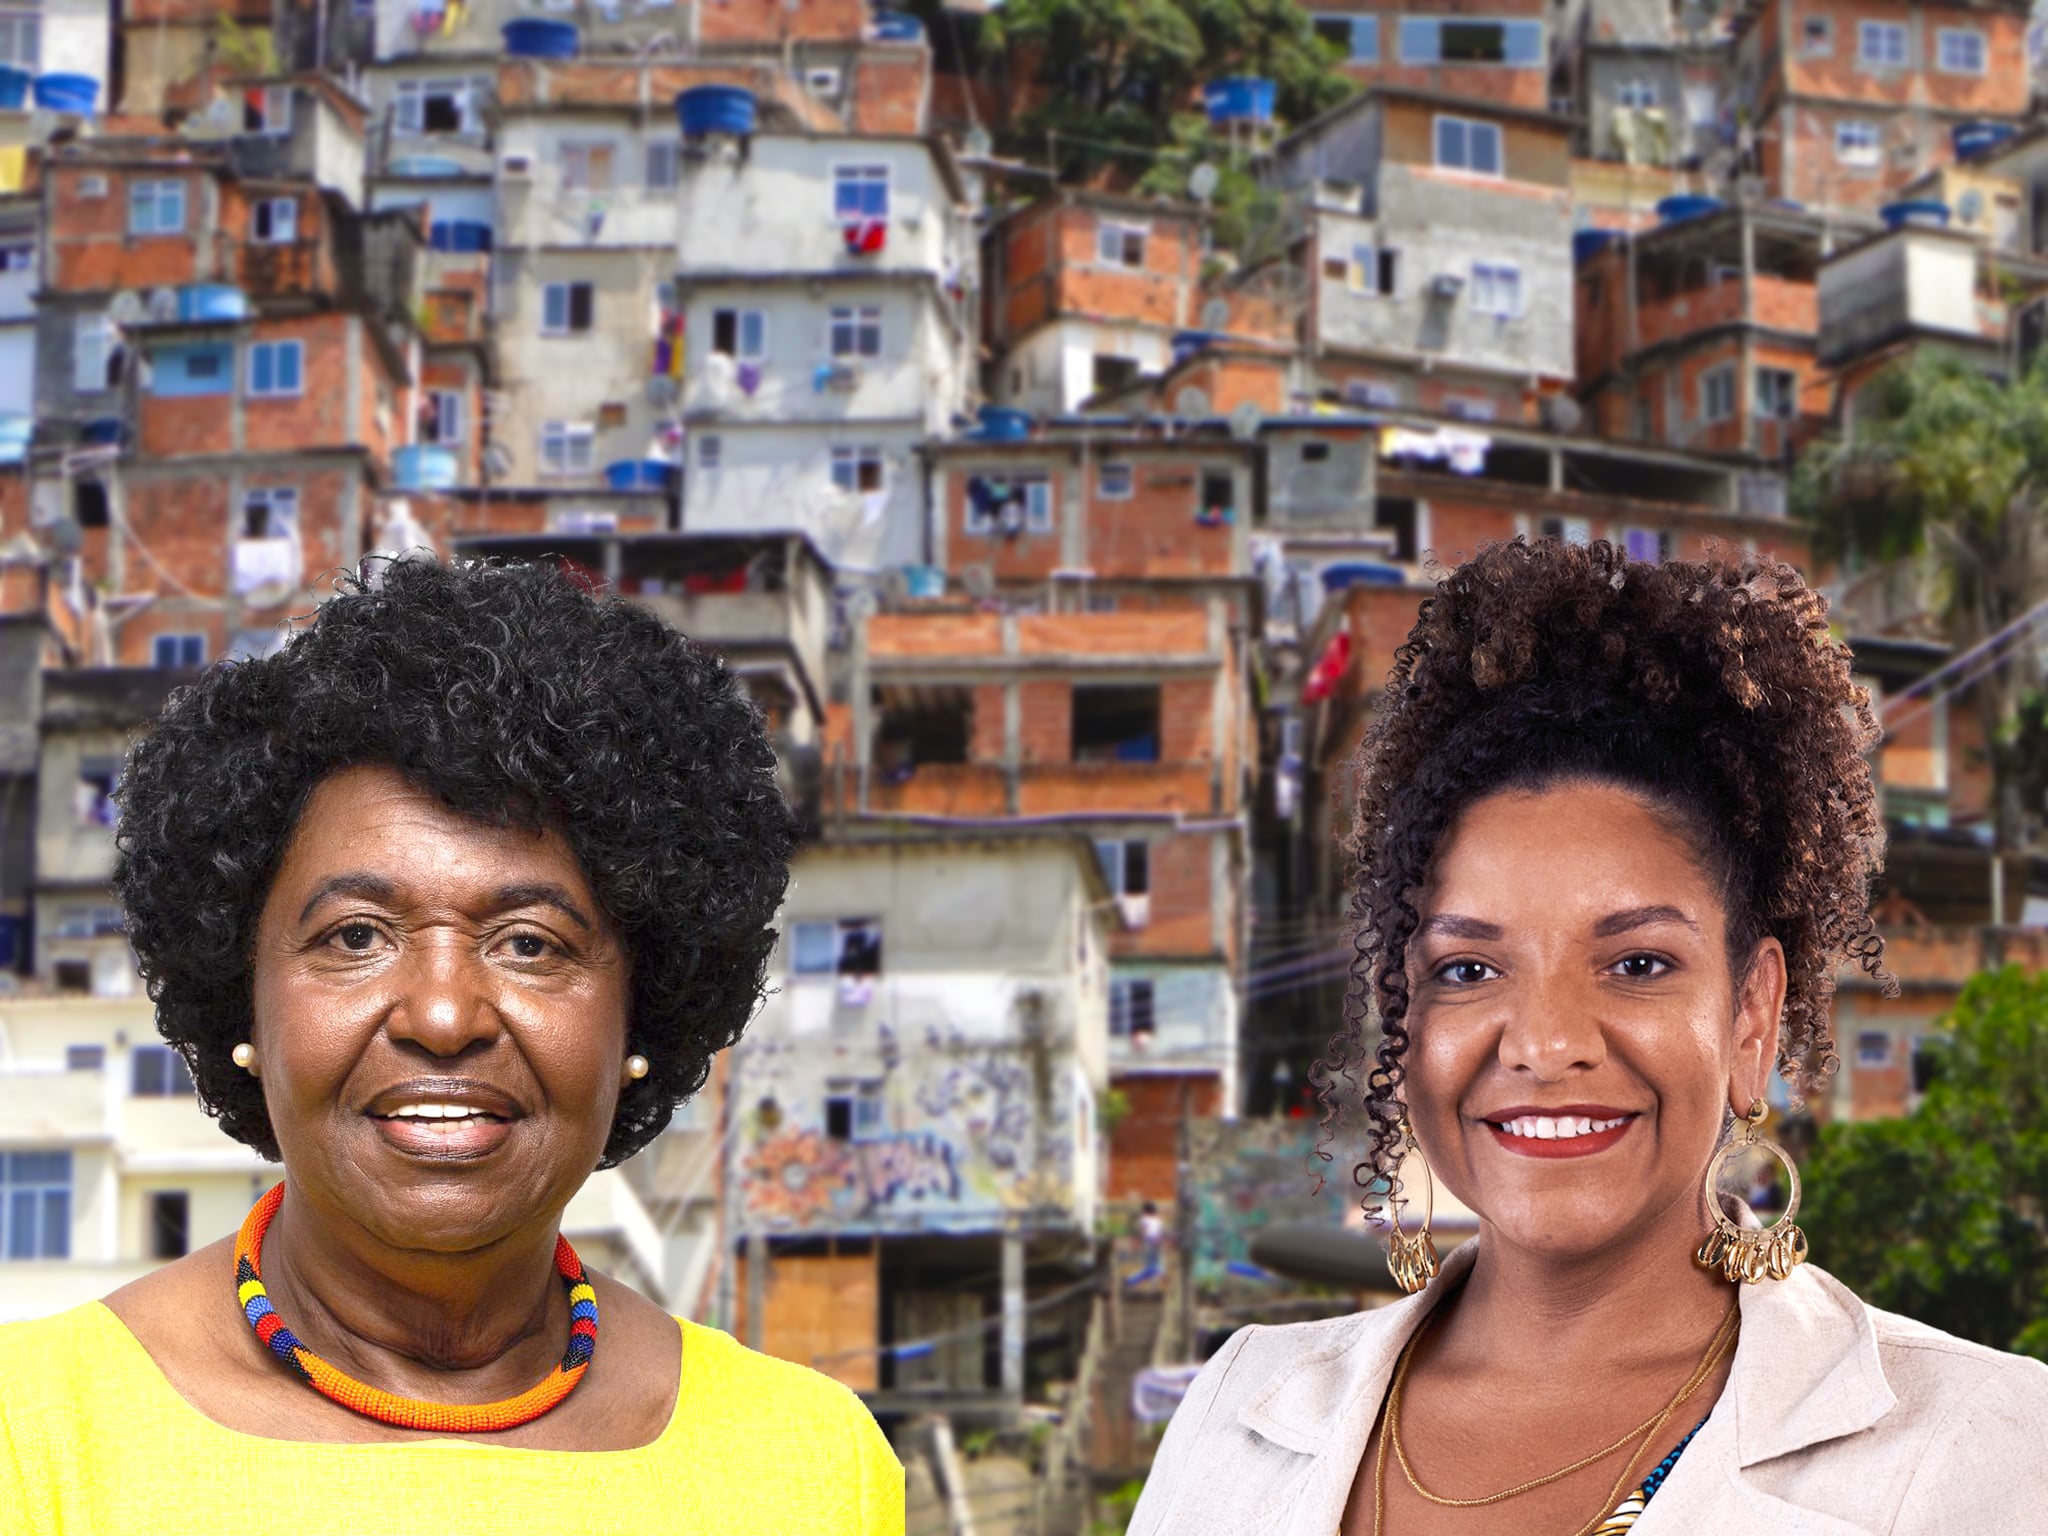 Benedita da Silva e Renata Souza são mulheres negras e originárias das favelas que disputam a prefeitura do Rio - Arte: Ylanna Brandão/ Fotos: Divulgação